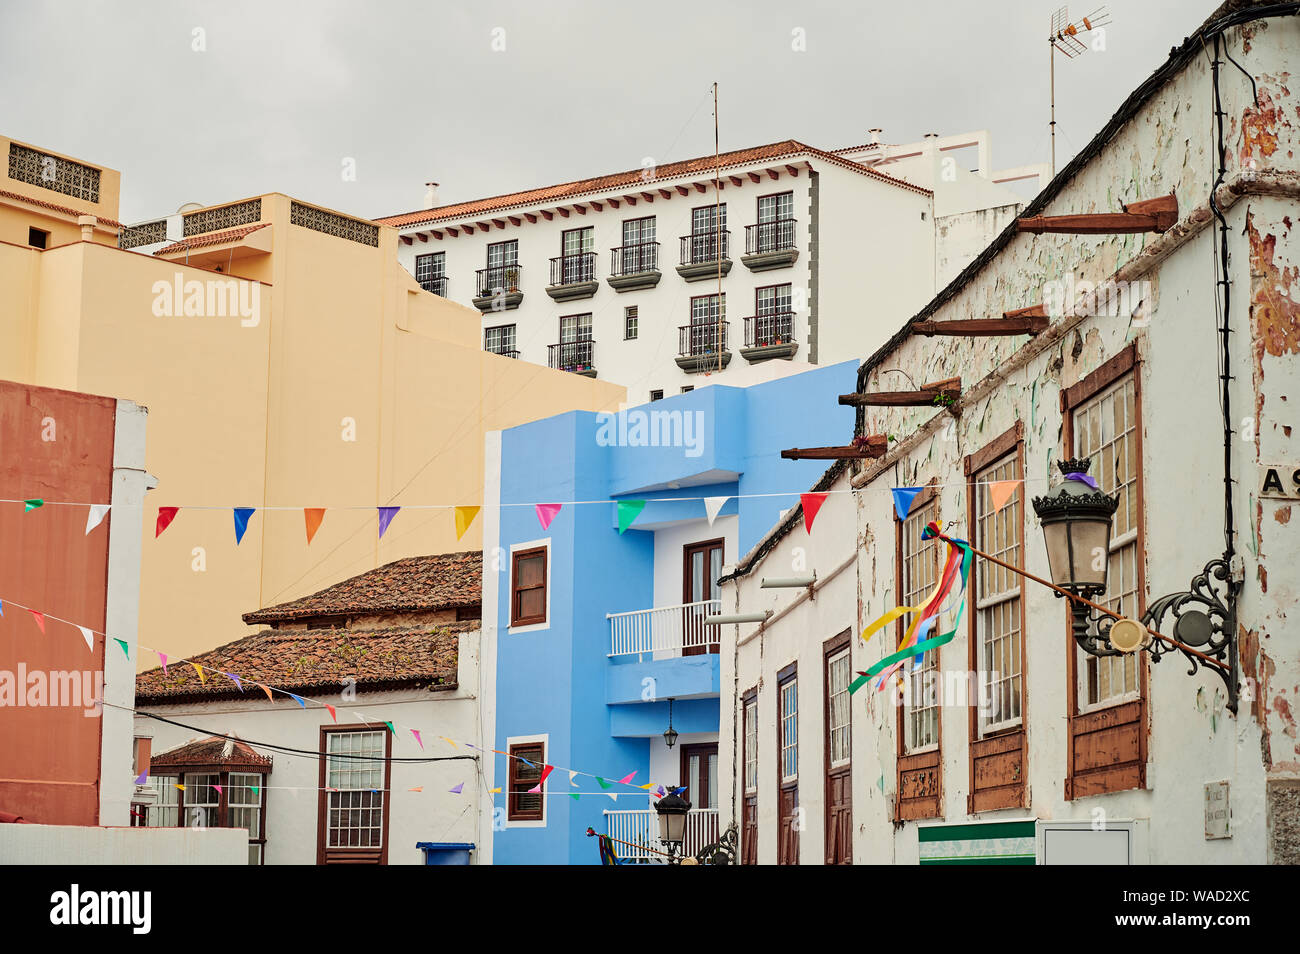 Sencillo exterior de coloridas casas con techos de tejas y balcones a la calle auténtico decorado con guirnaldas de bandera en Tenerife, España Foto de stock